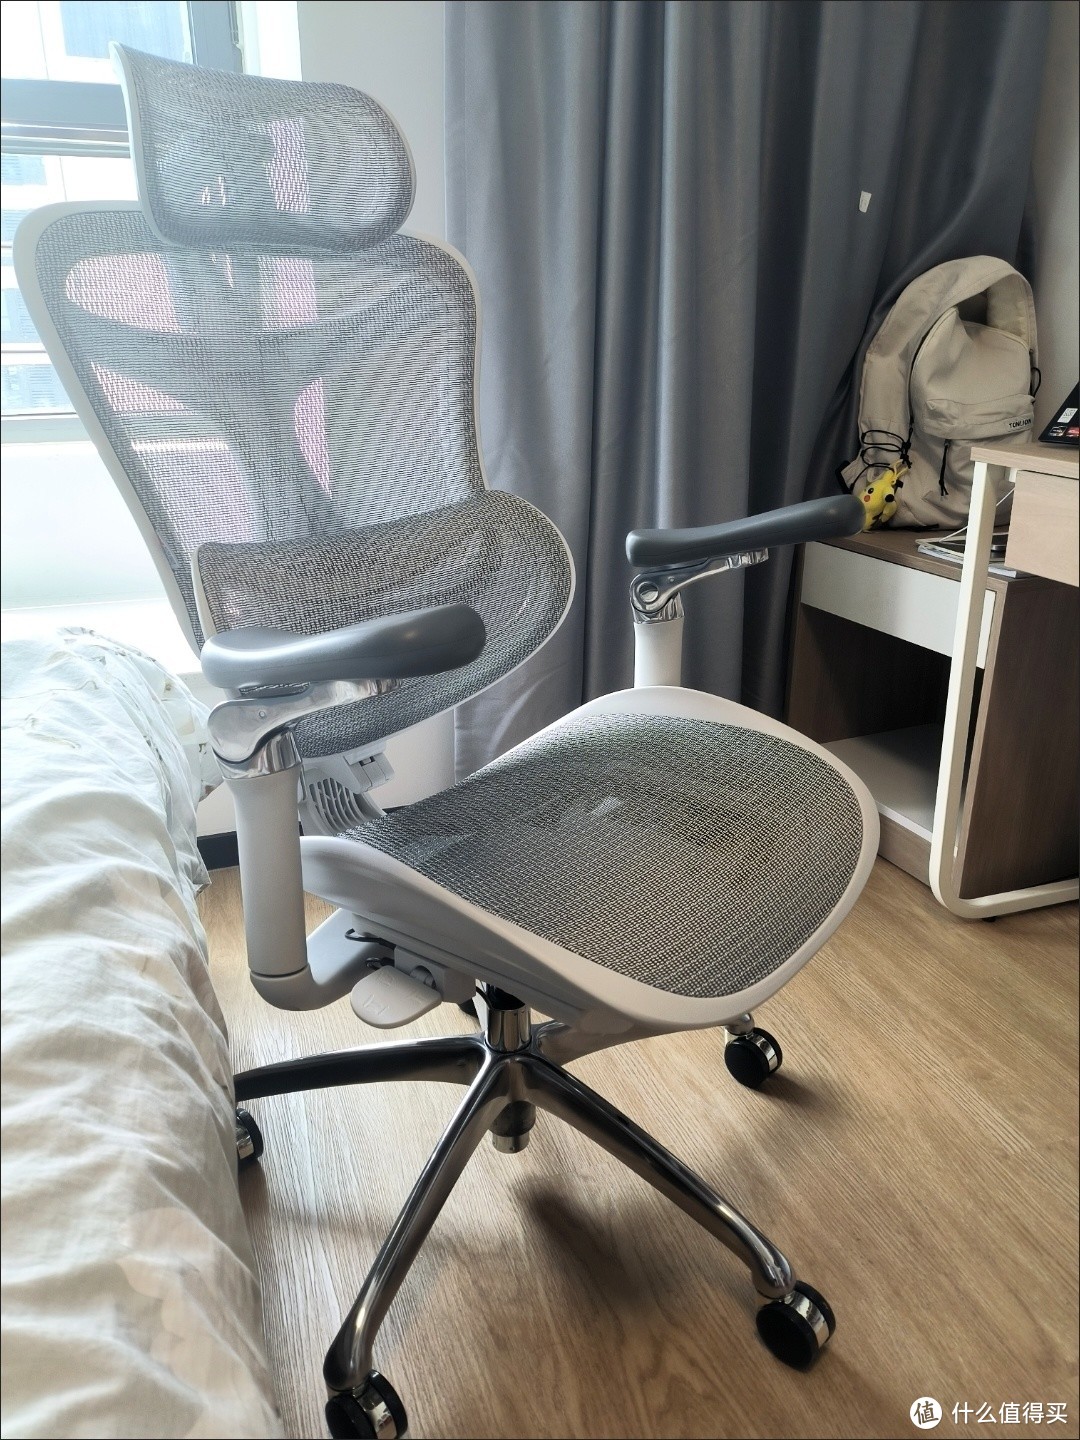 西昊人体工学椅是一款优质的办公椅